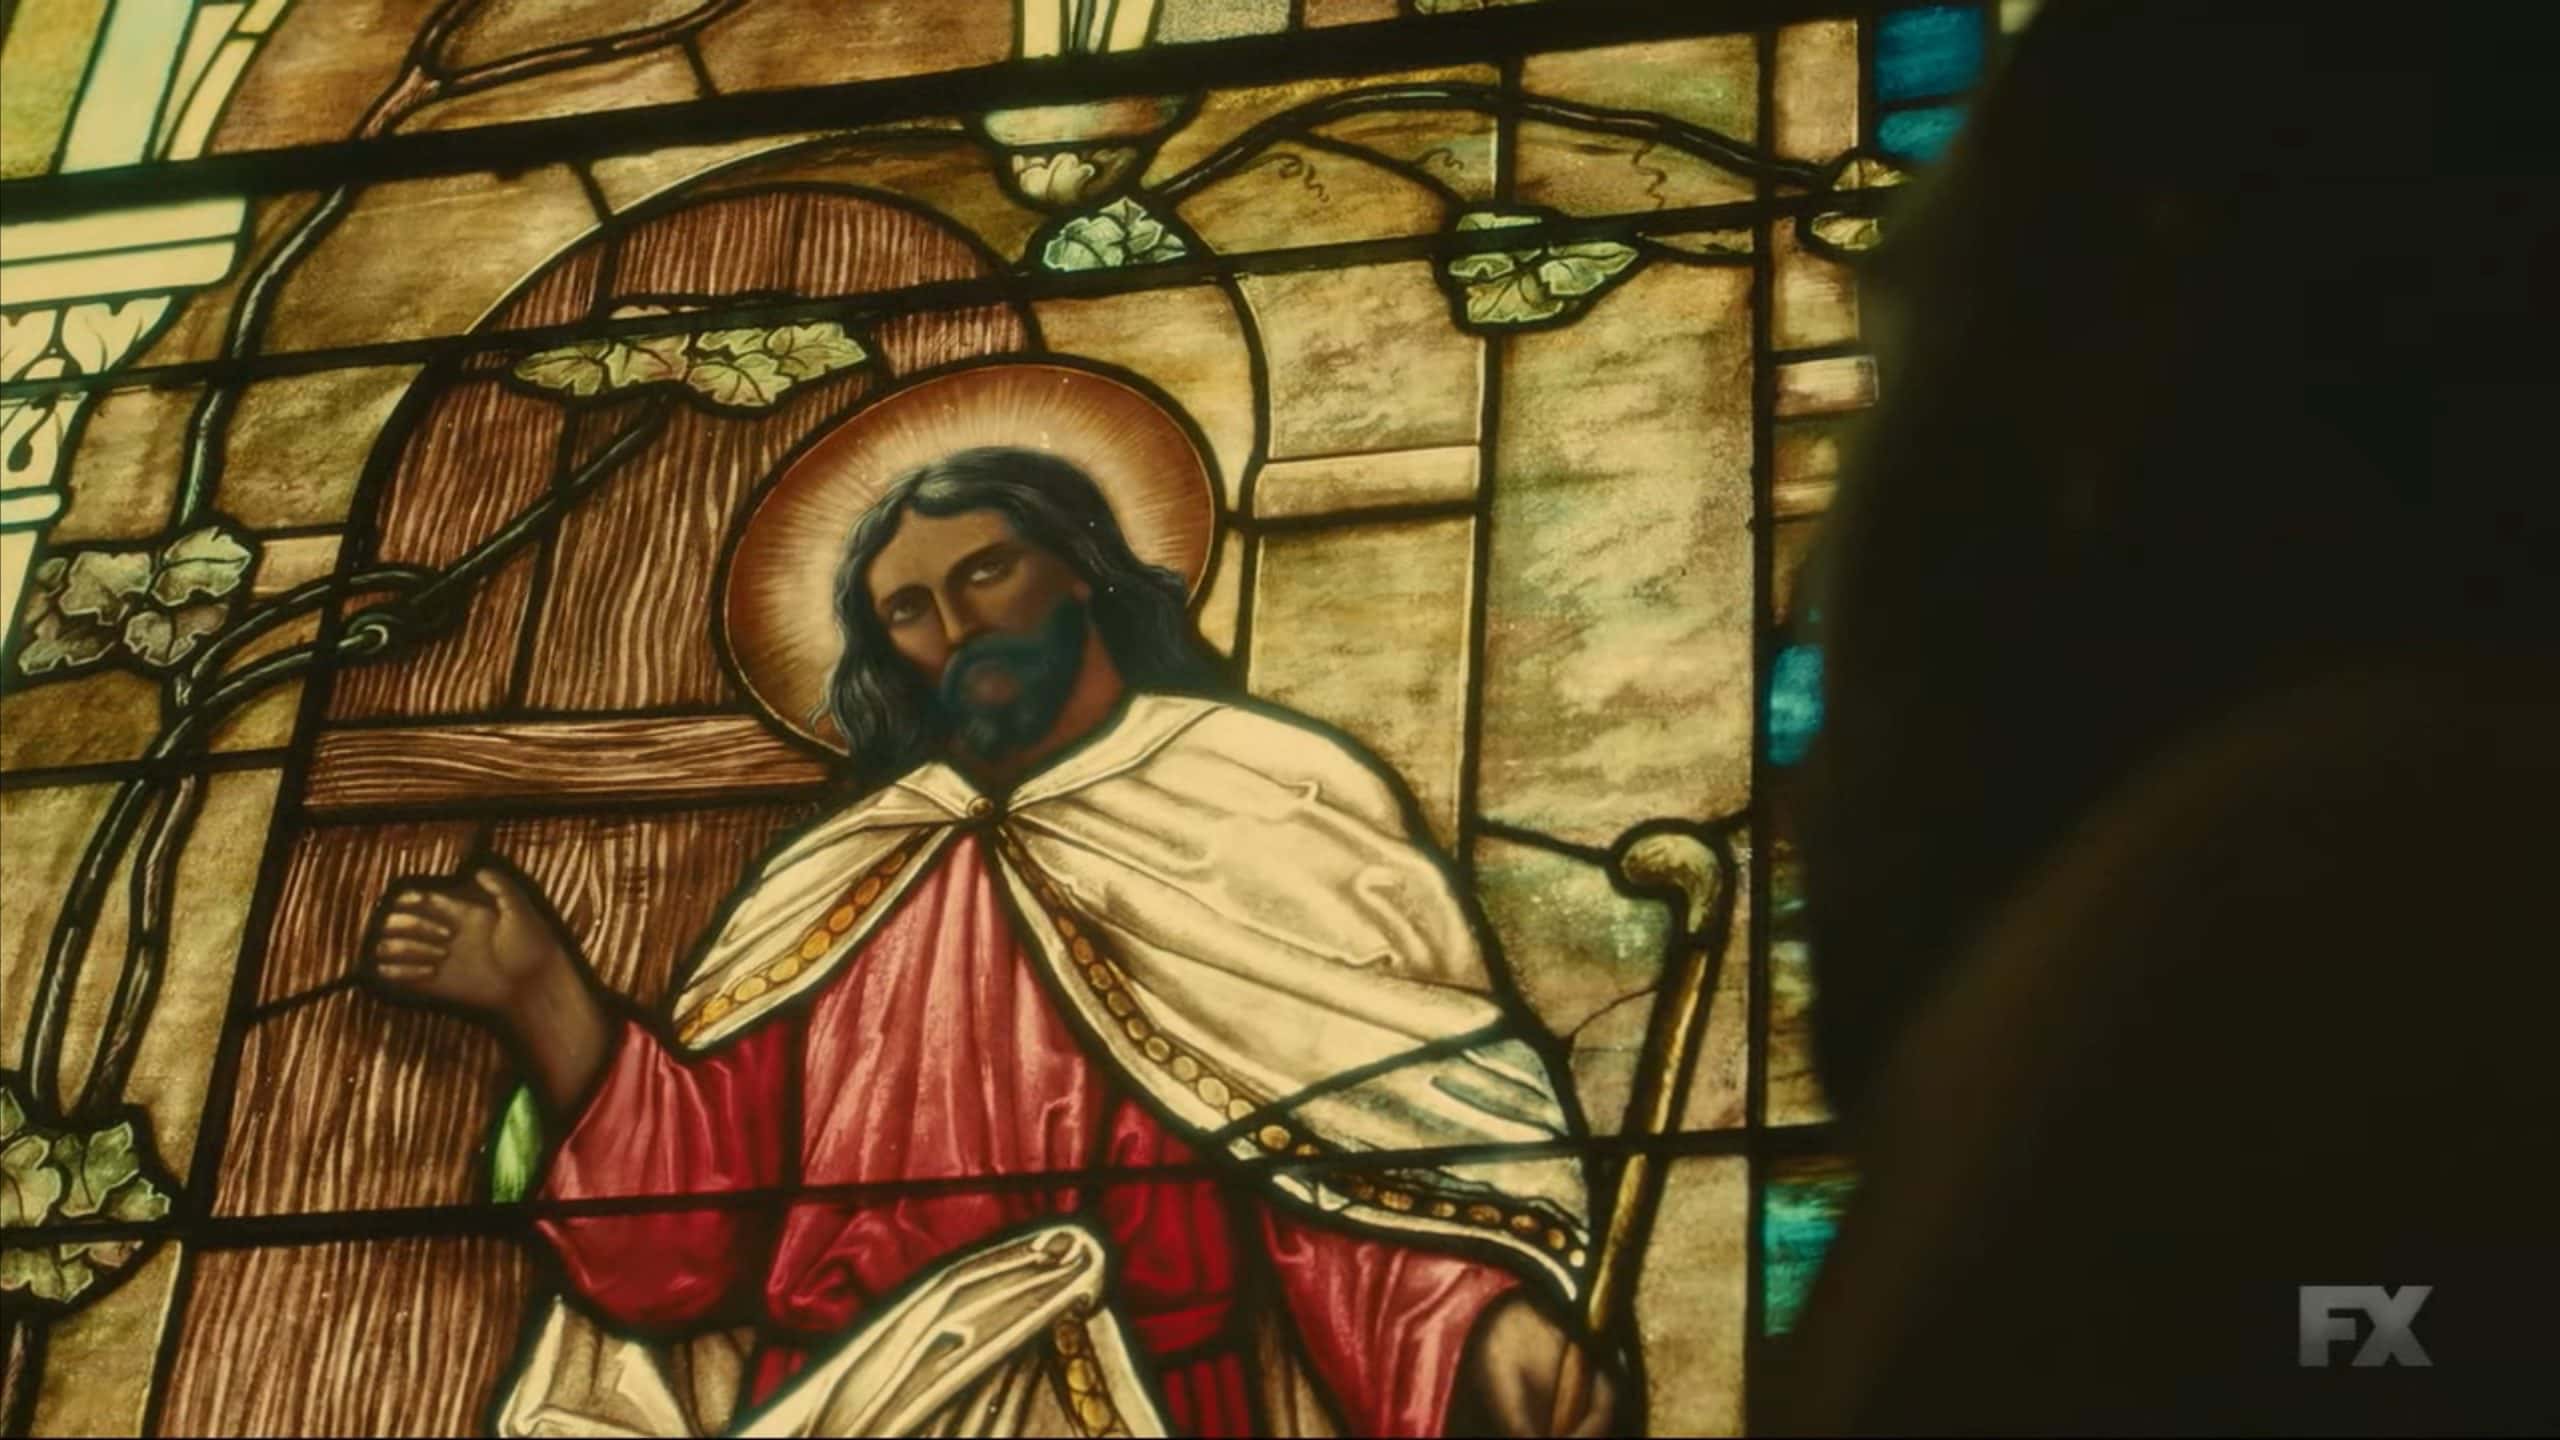 Black Jesus in a stain glass window